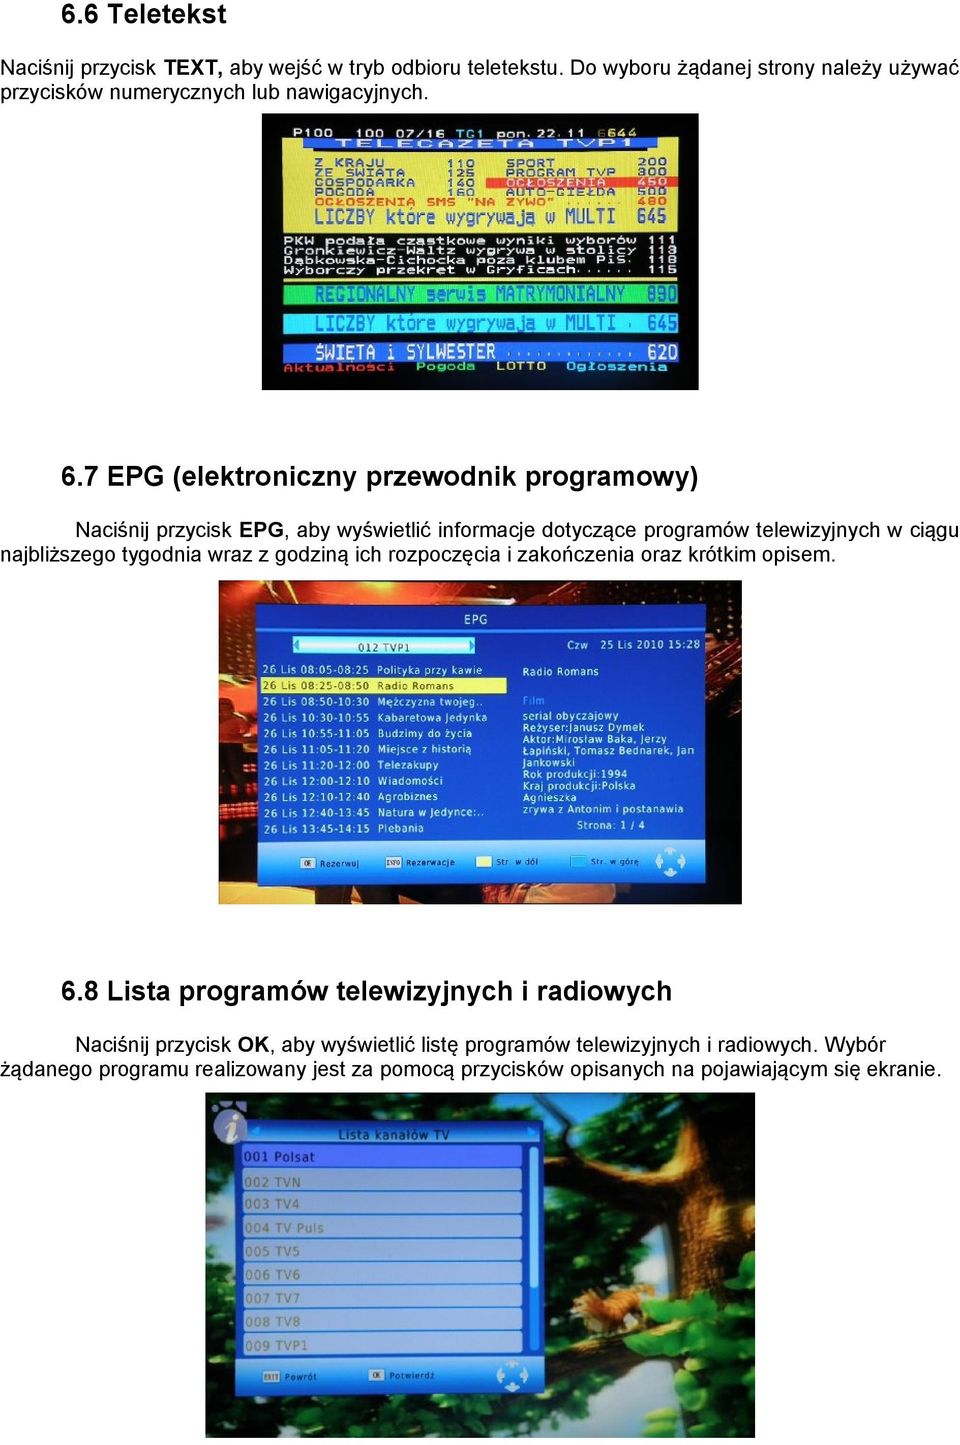 7 EPG (elektroniczny przewodnik programowy) Naciśnij przycisk EPG, aby wyświetlić informacje dotyczące programów telewizyjnych w ciągu najbliższego